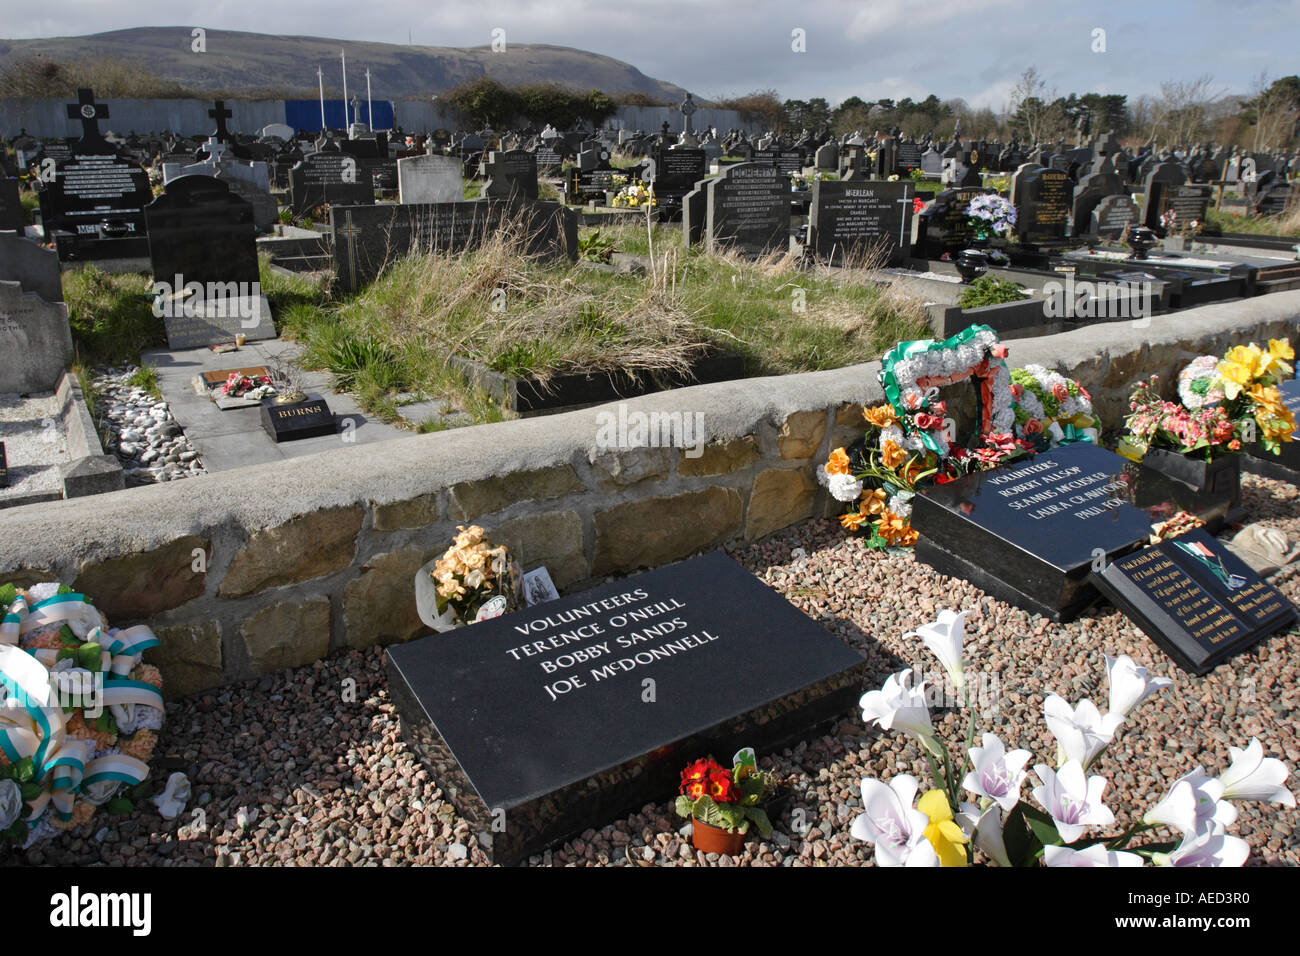 Bobby Sands, républicain grave complot, cimetière Milltown, Belfast. L'Irlande du Nord Banque D'Images